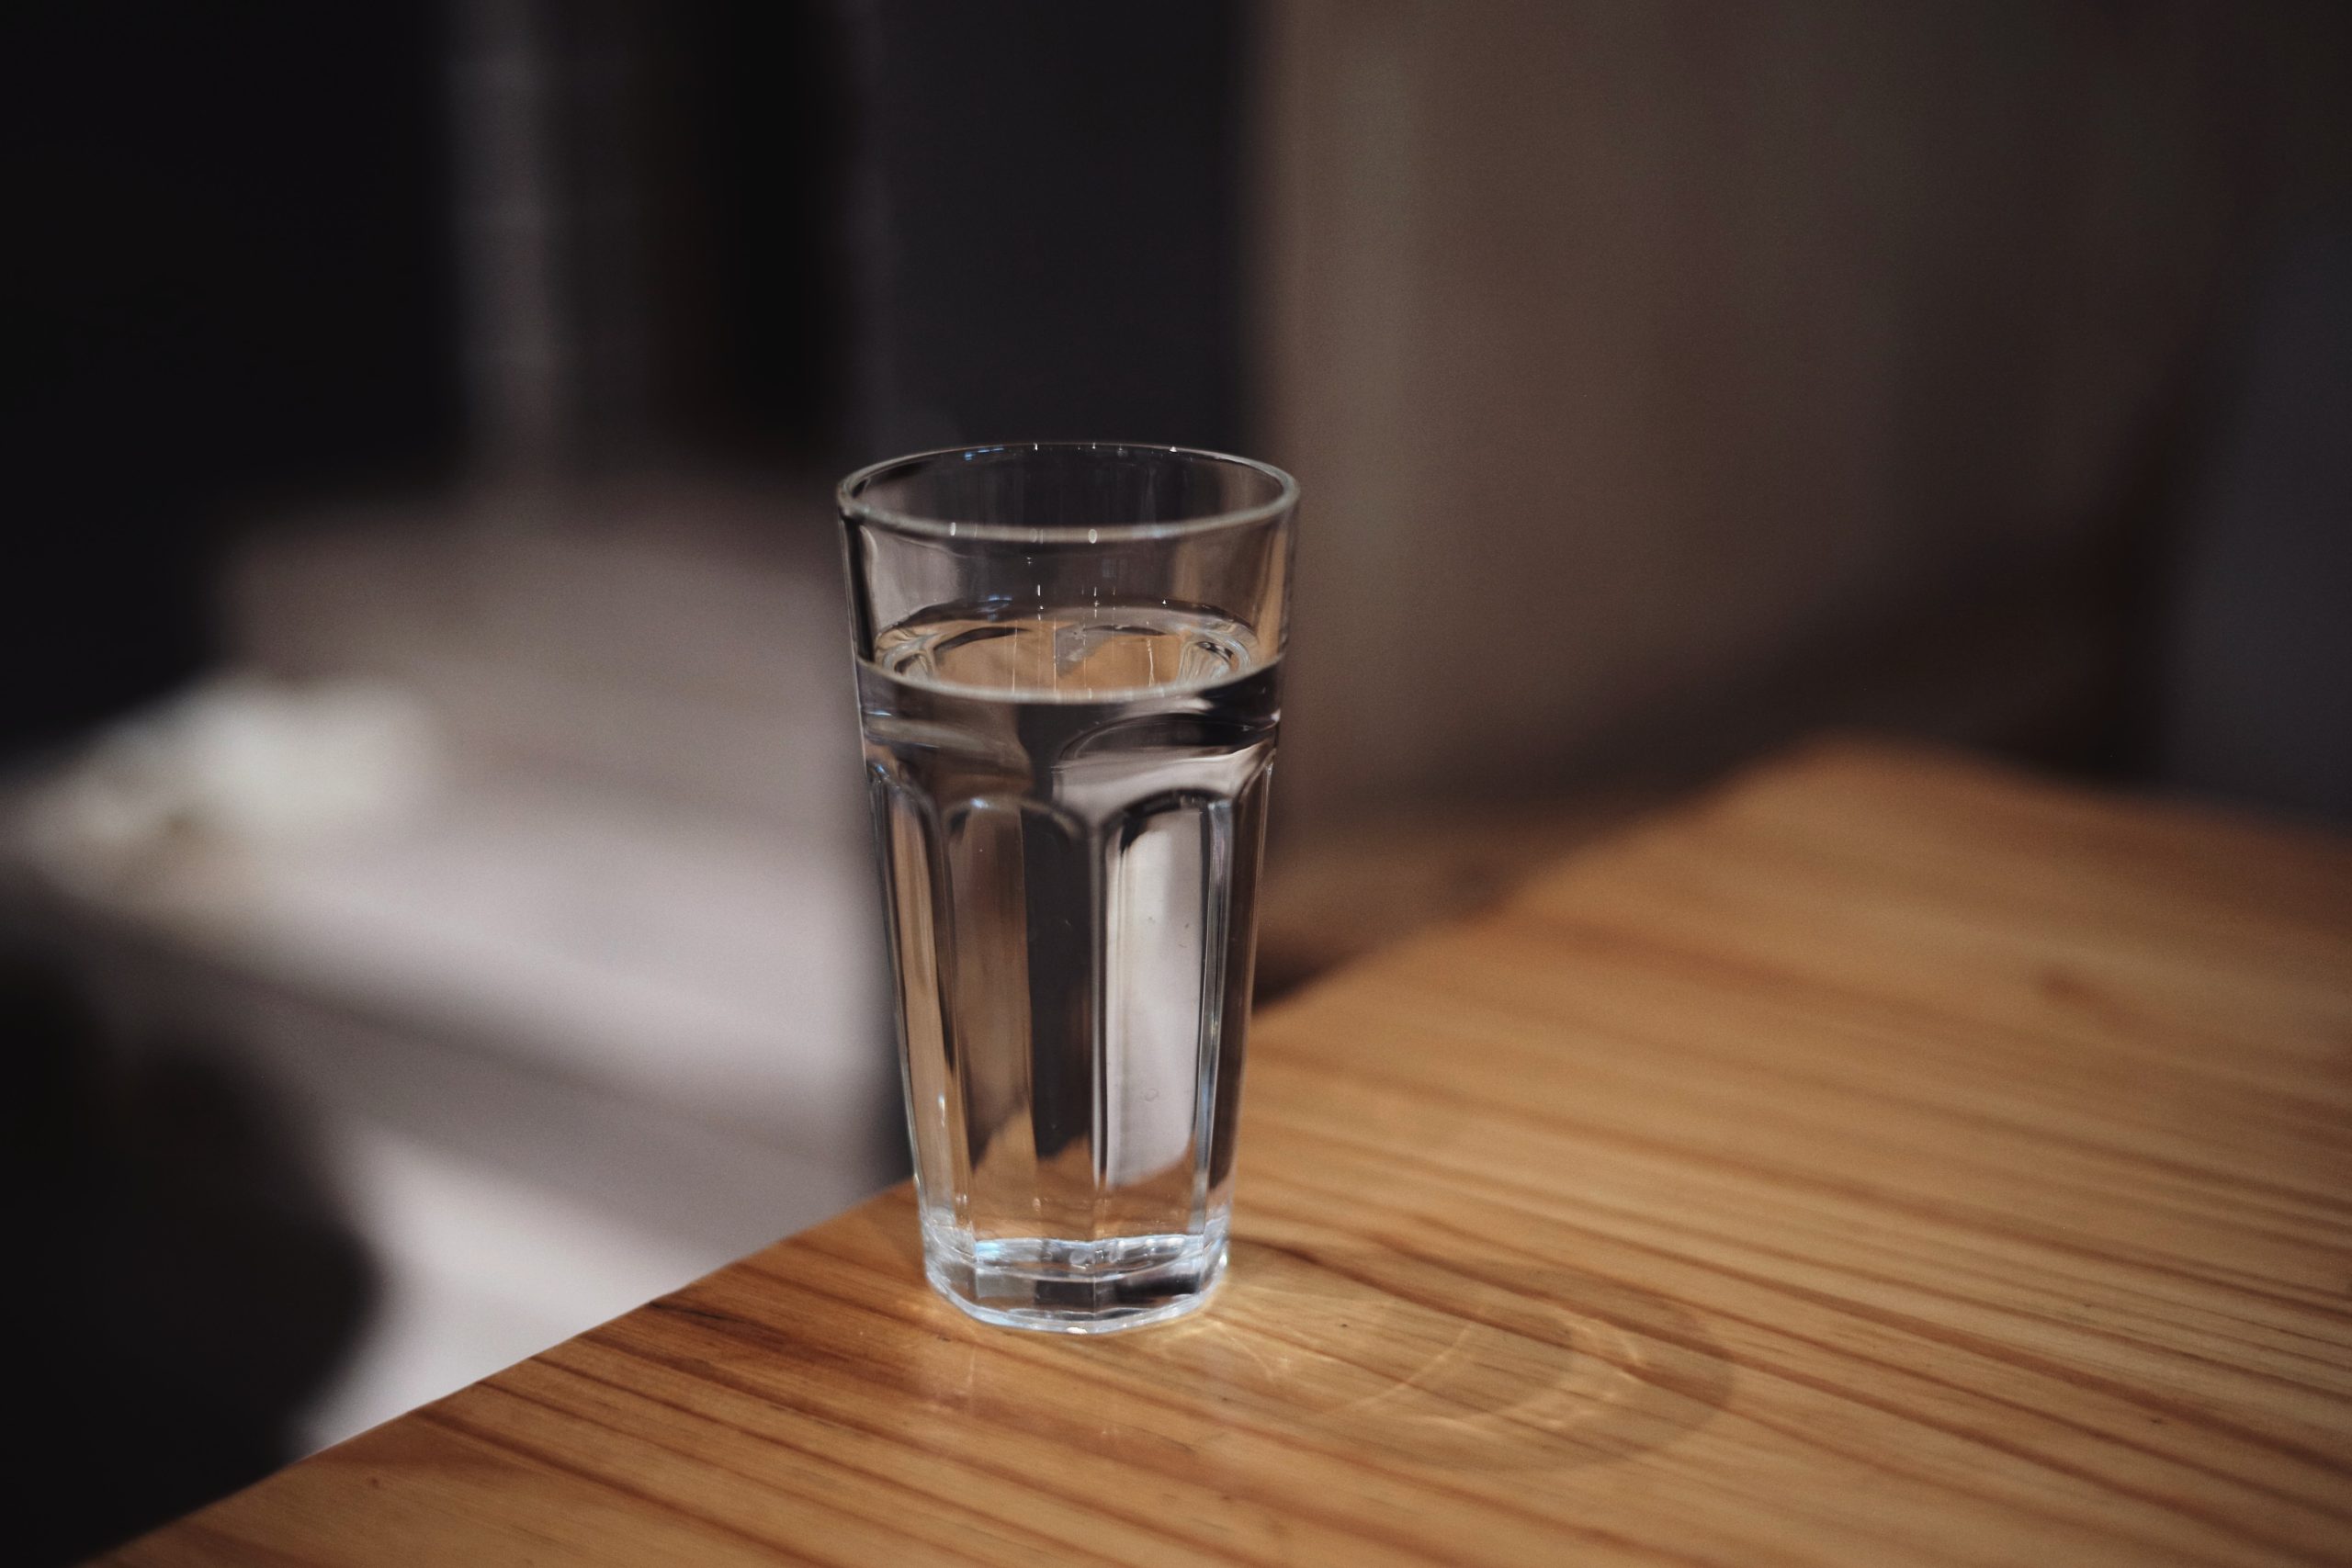  Drømmer om et glass vann under sengen: IKKE ignorer denne drømmen